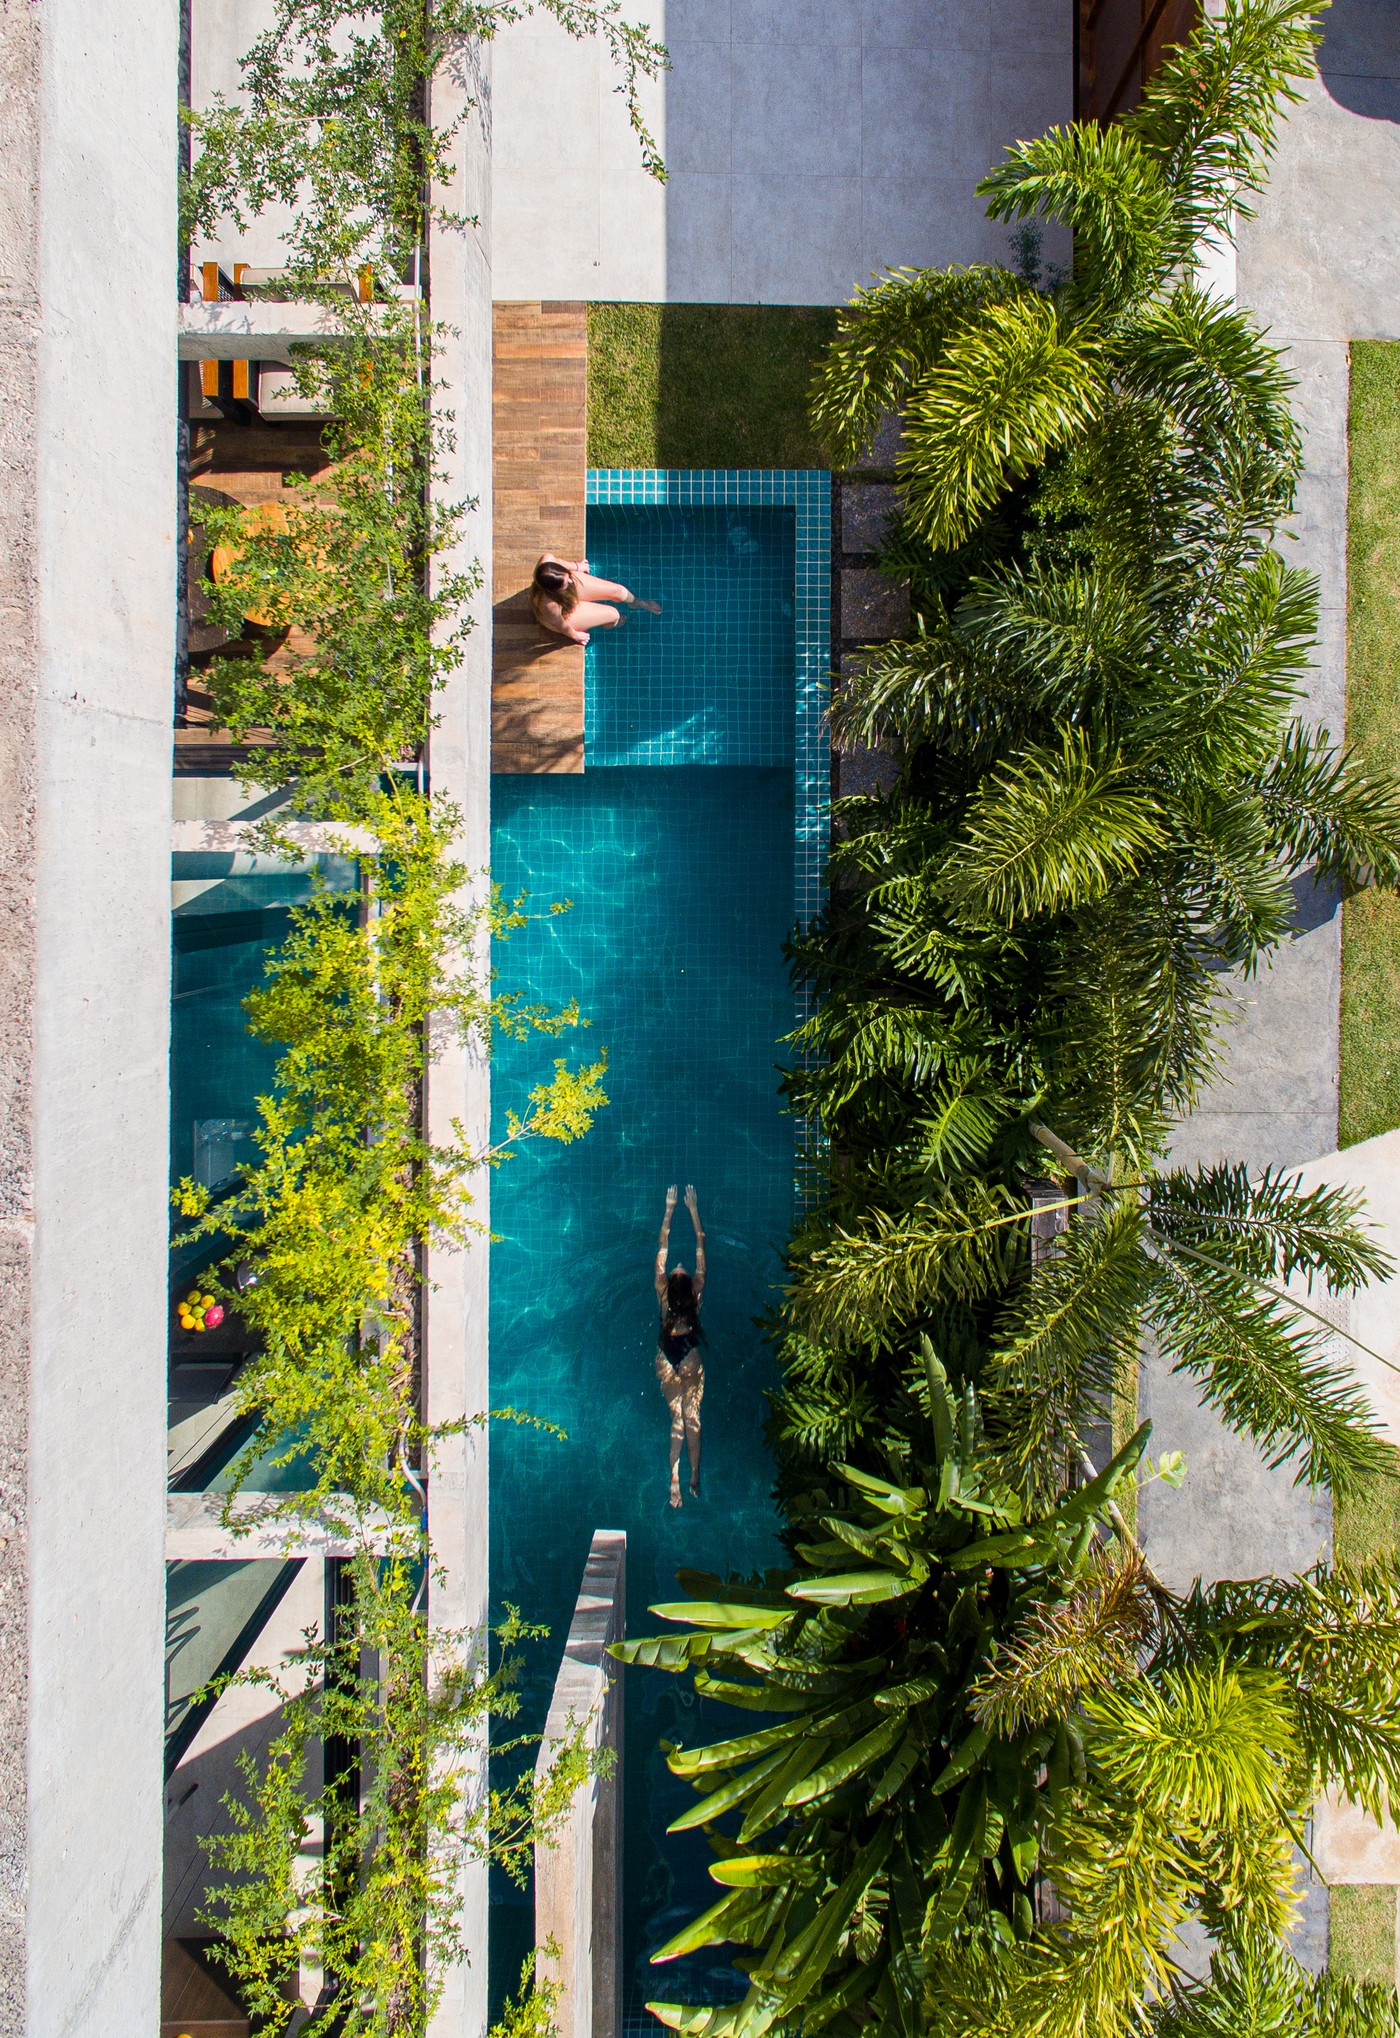 Décor do dia: área externa com piscina é um convite ao relaxamento (Foto: Favaro Jr.)